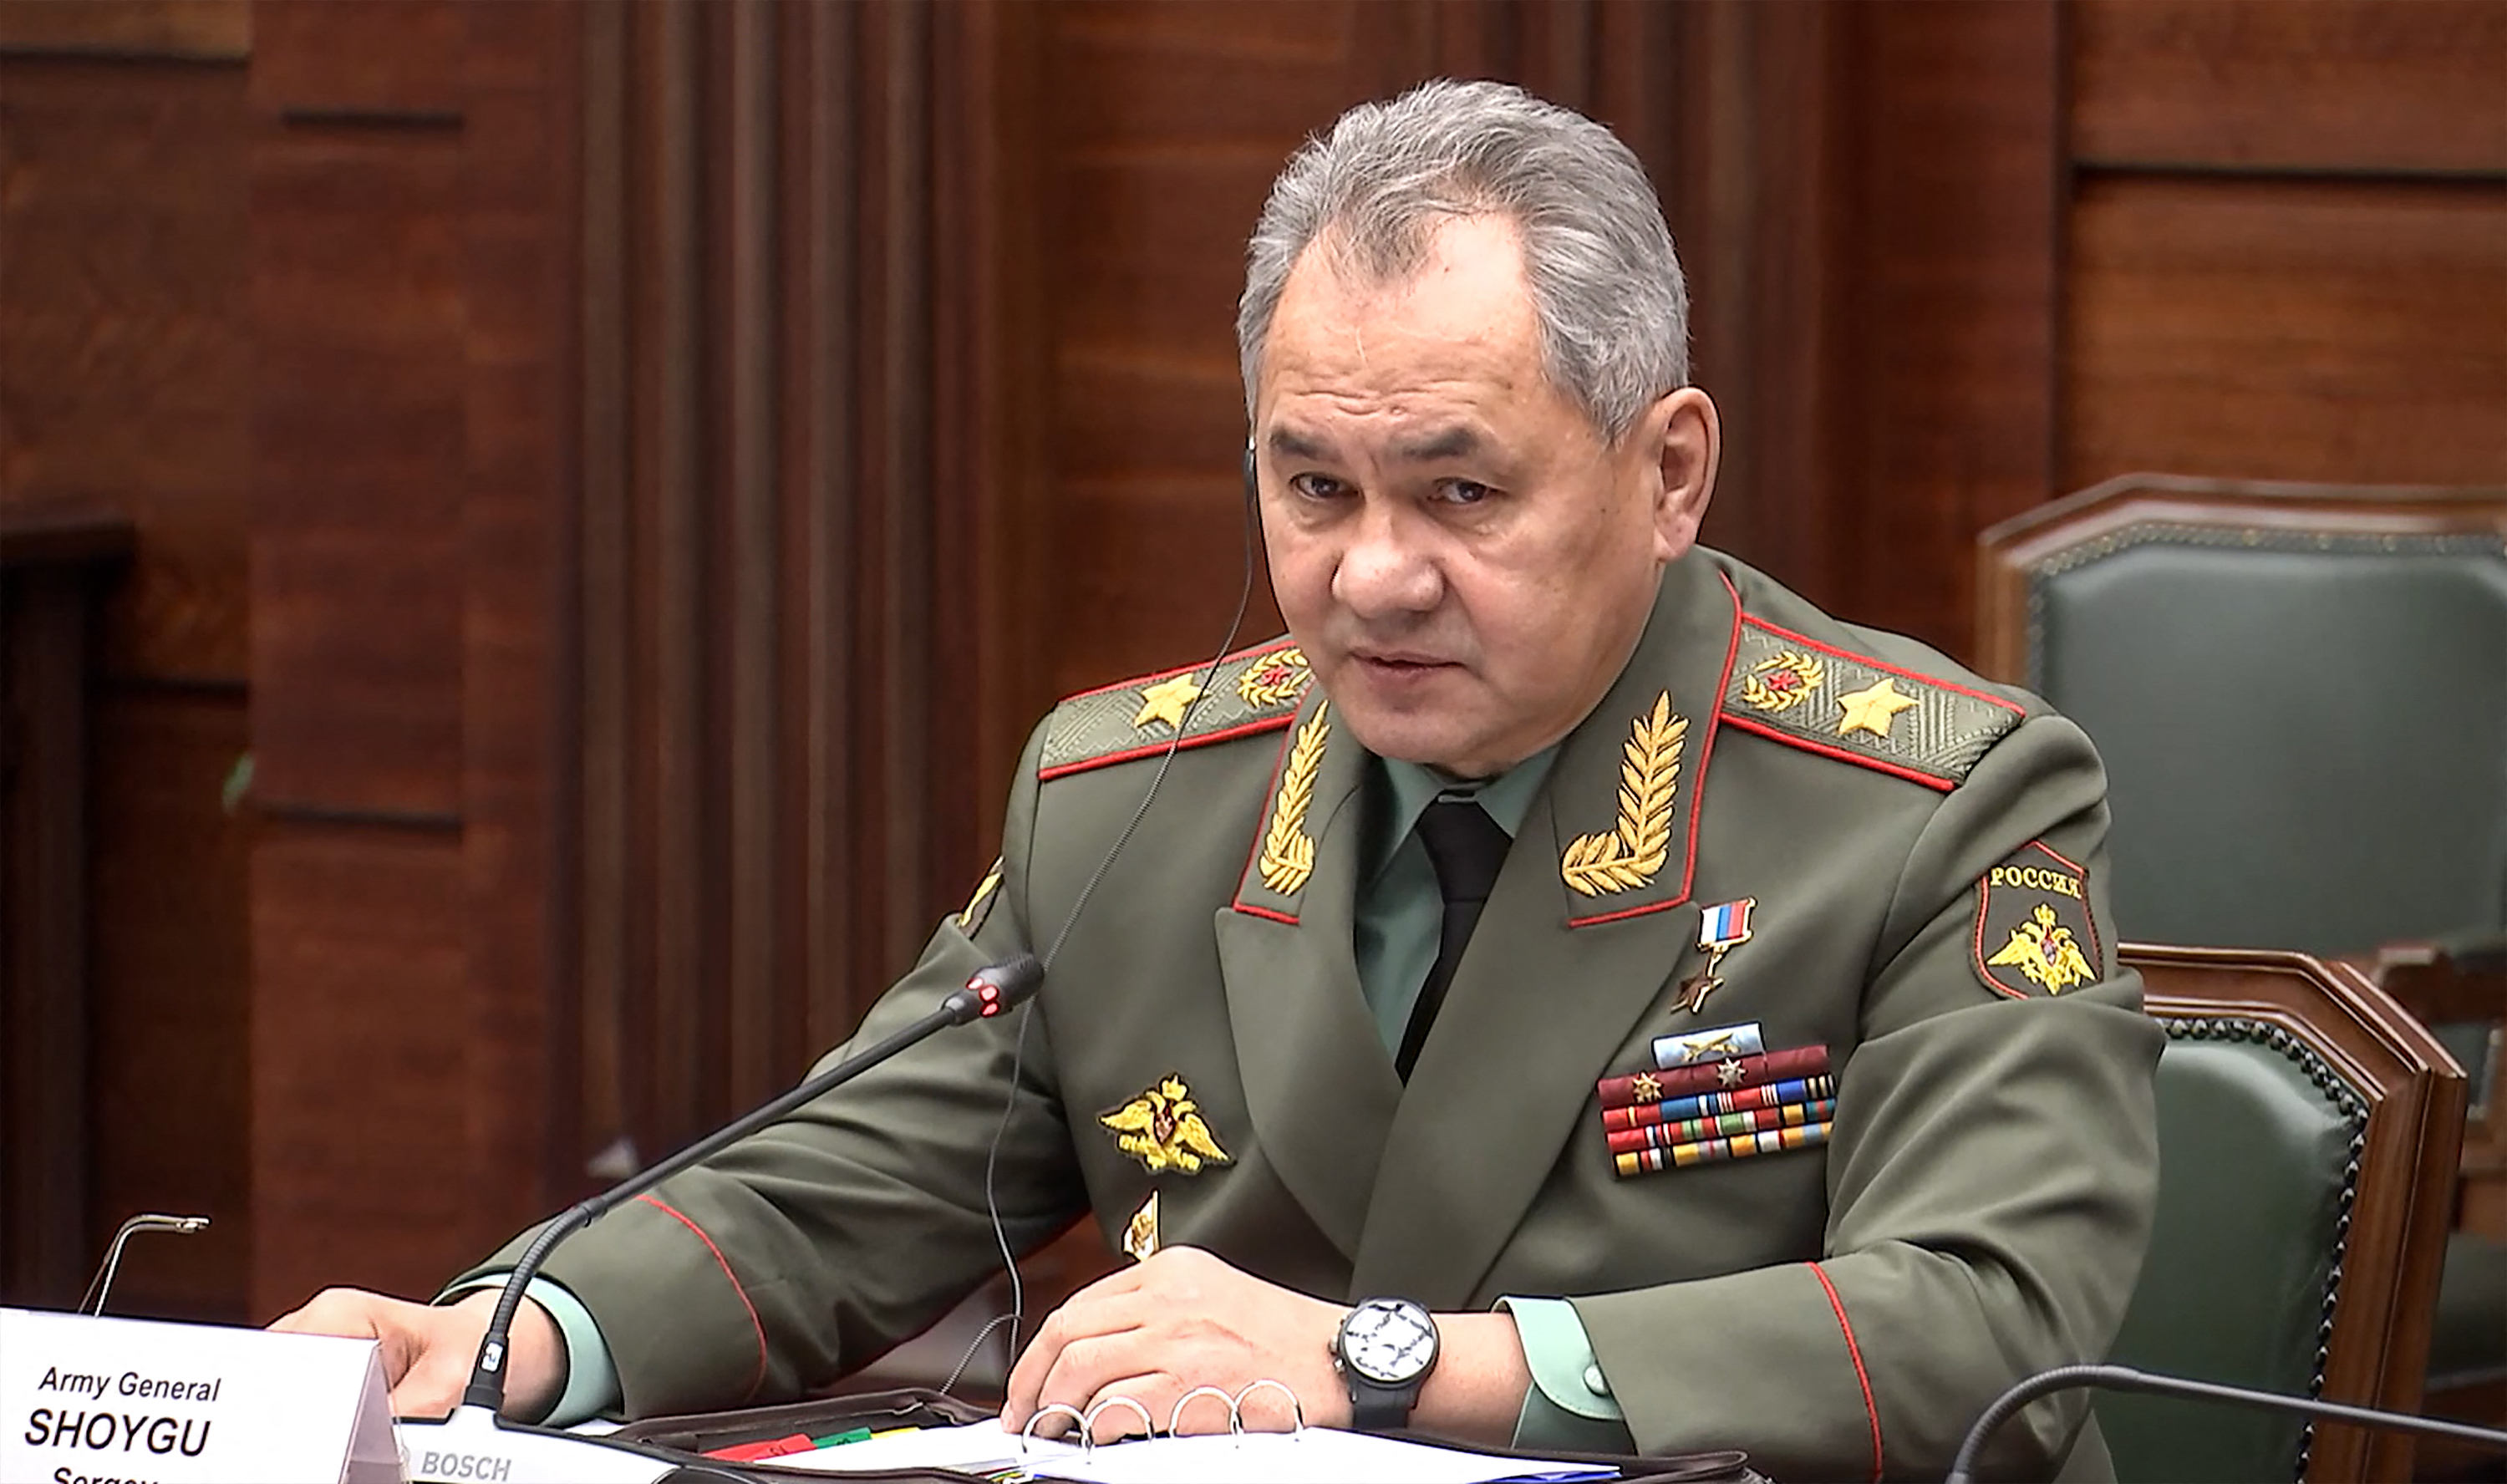 Sojgu azt állítja, hogy kevesebb mint 6000 orosz katona halt meg eddig a harcokban